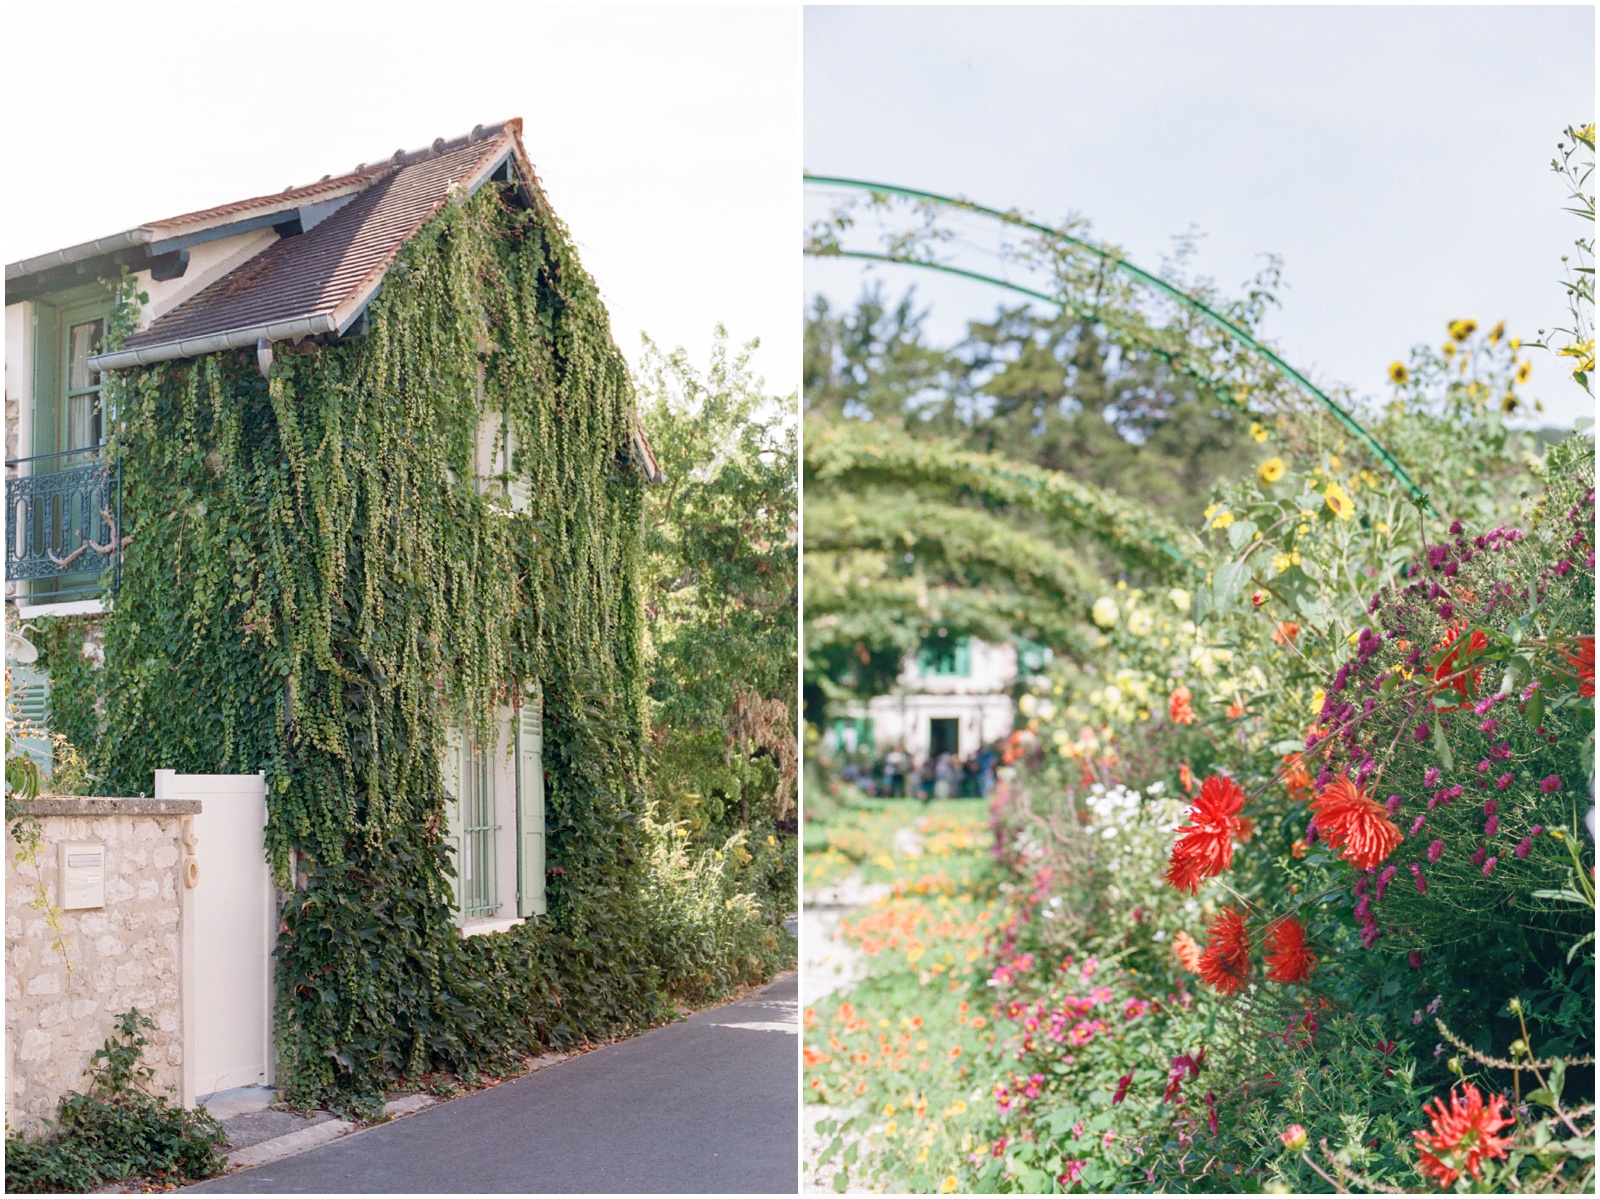 Monet gardens in France